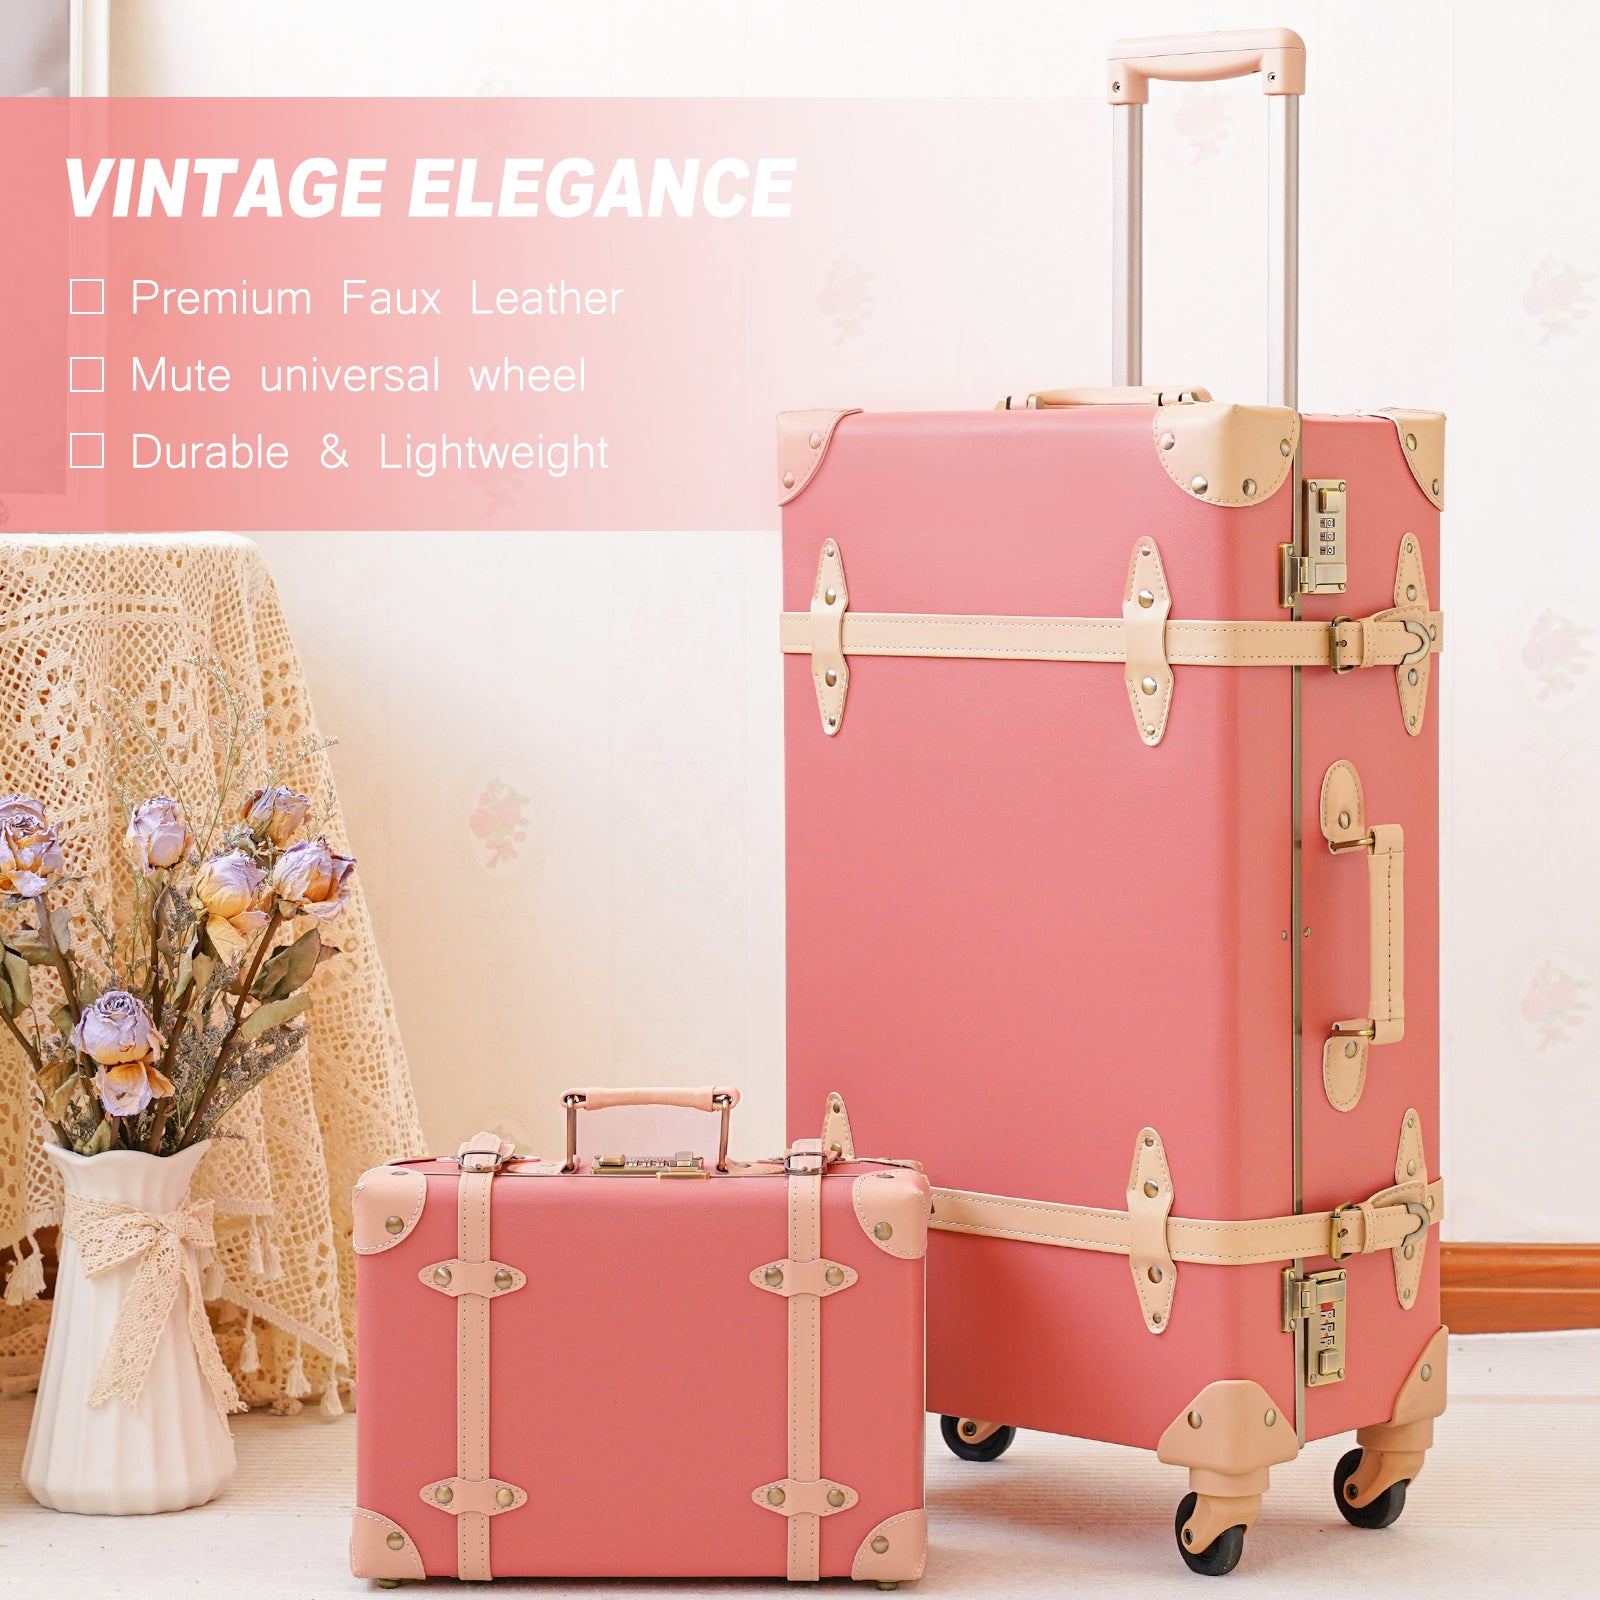 urecity vintage suitcase set for women, vintage luggage sets for